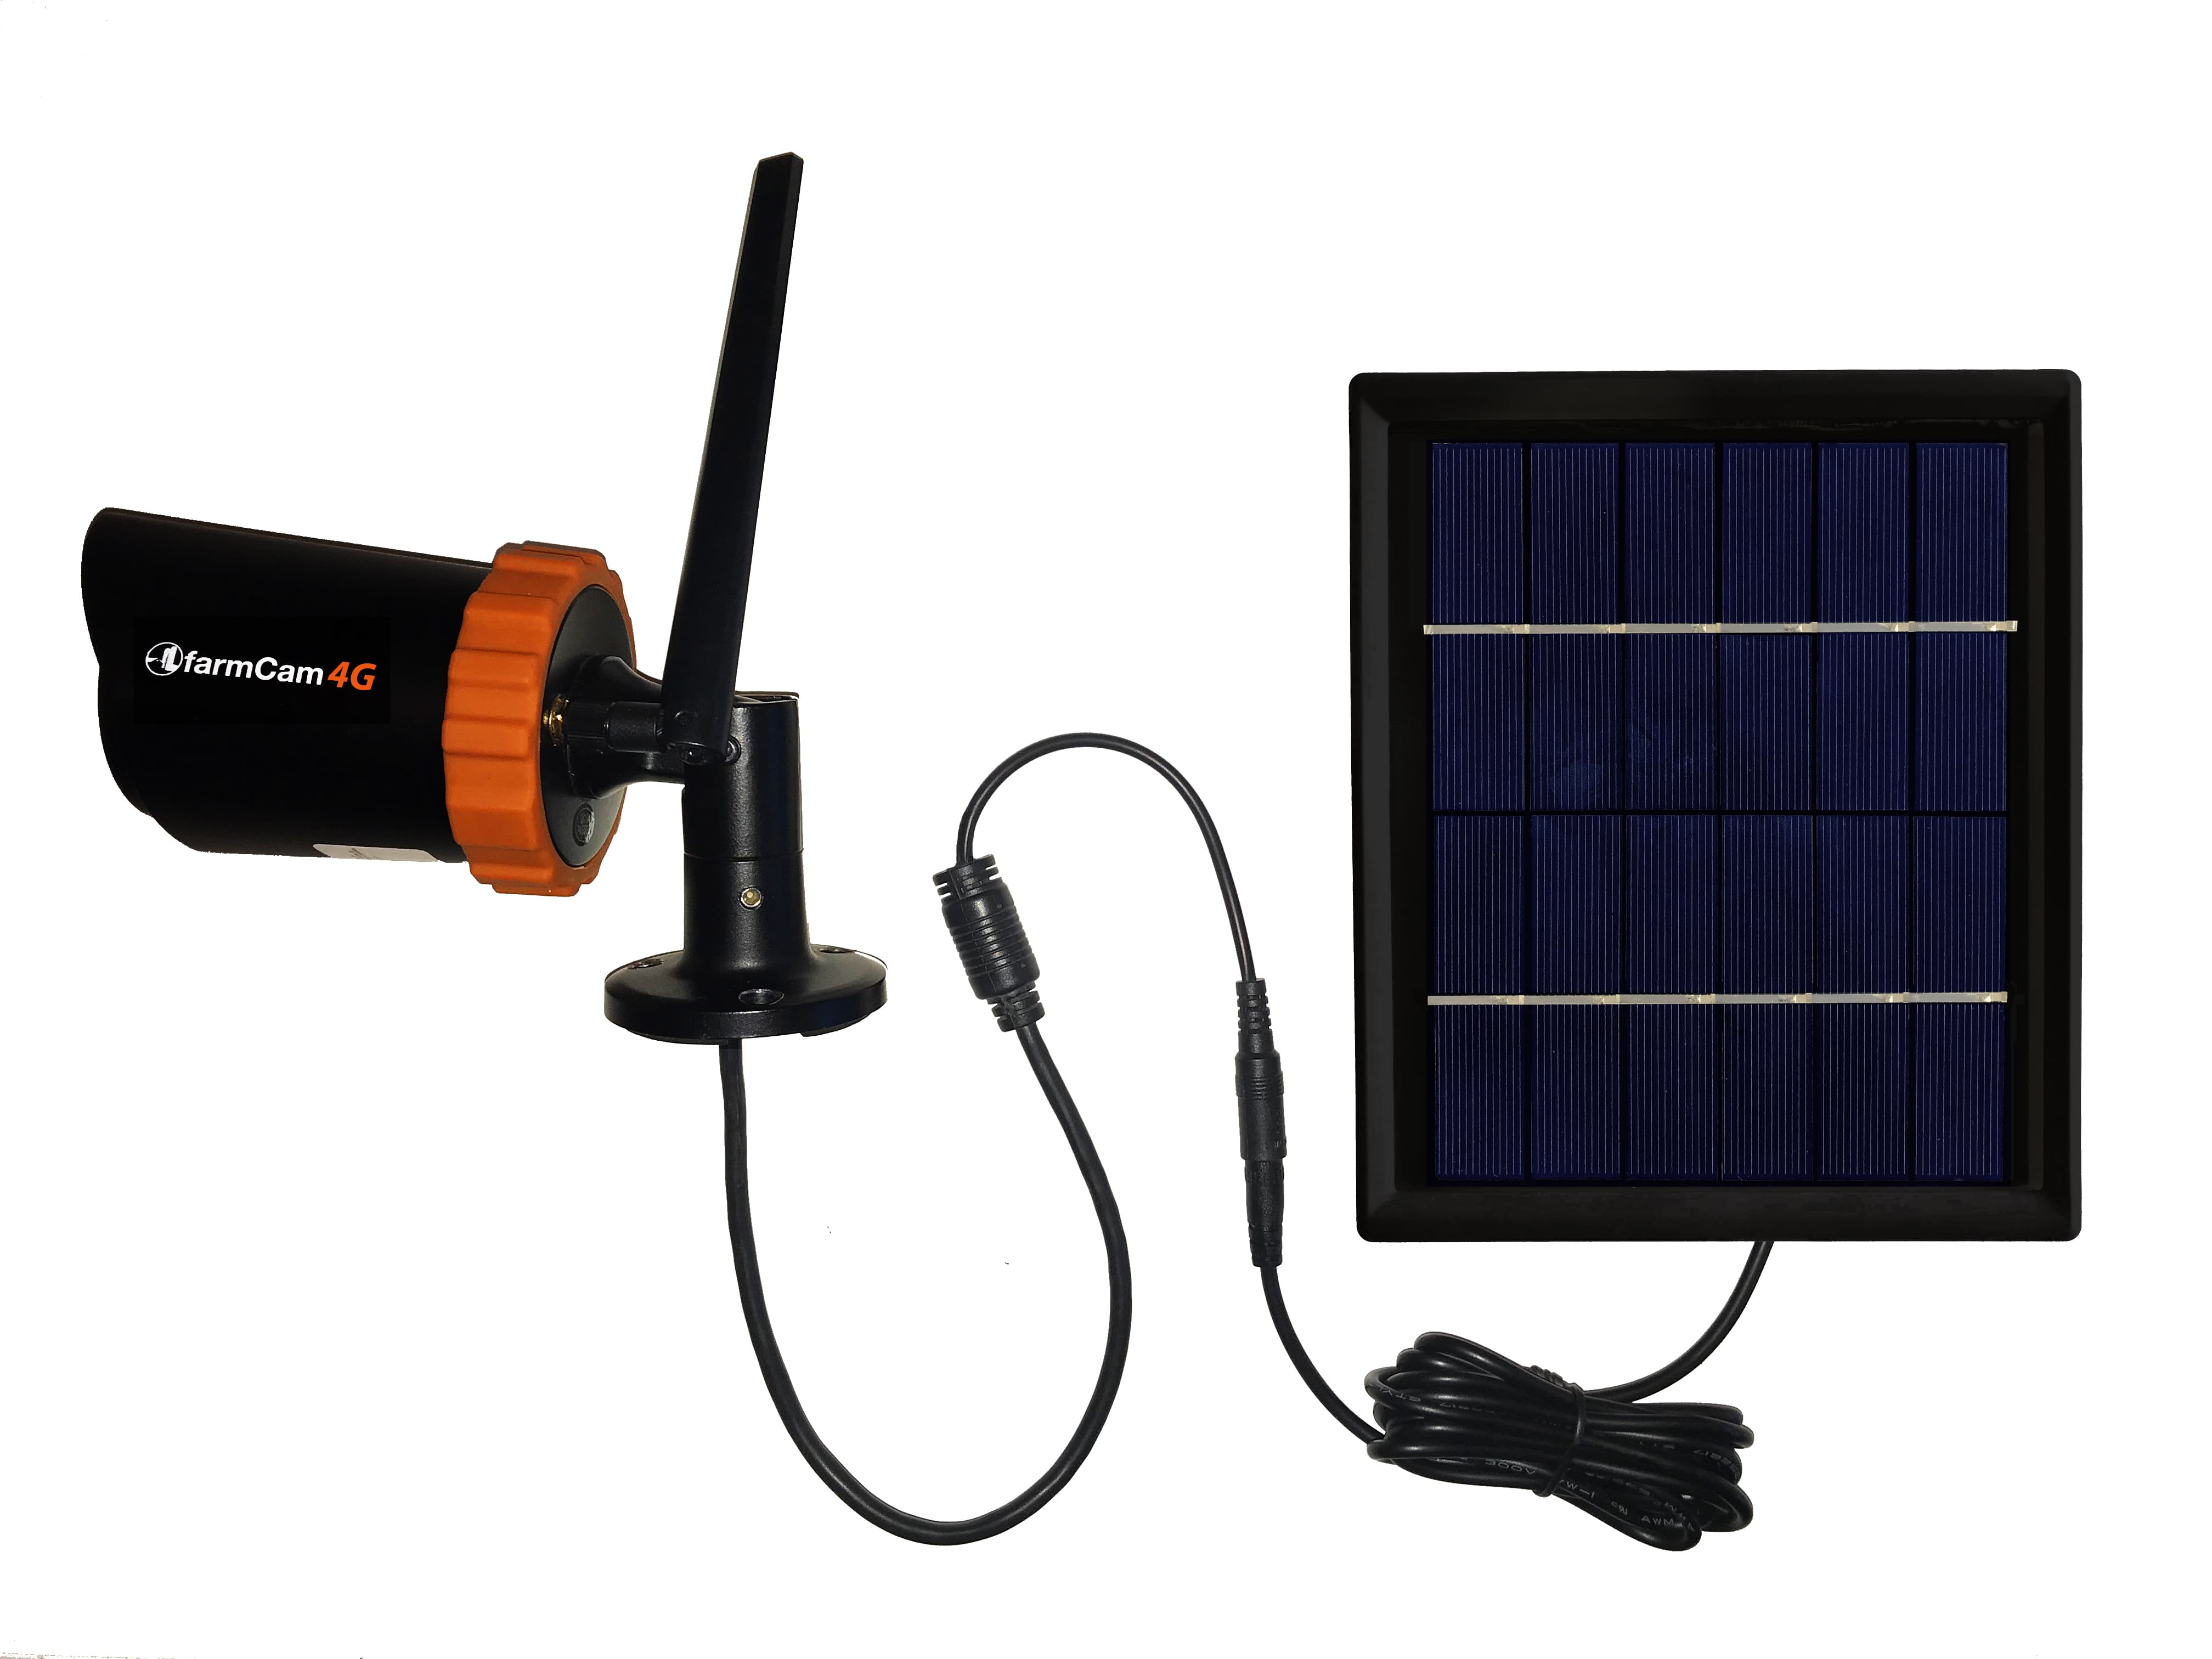 Comprar placa solar para camara de vigilancia farmcam | Sembralia tienda online